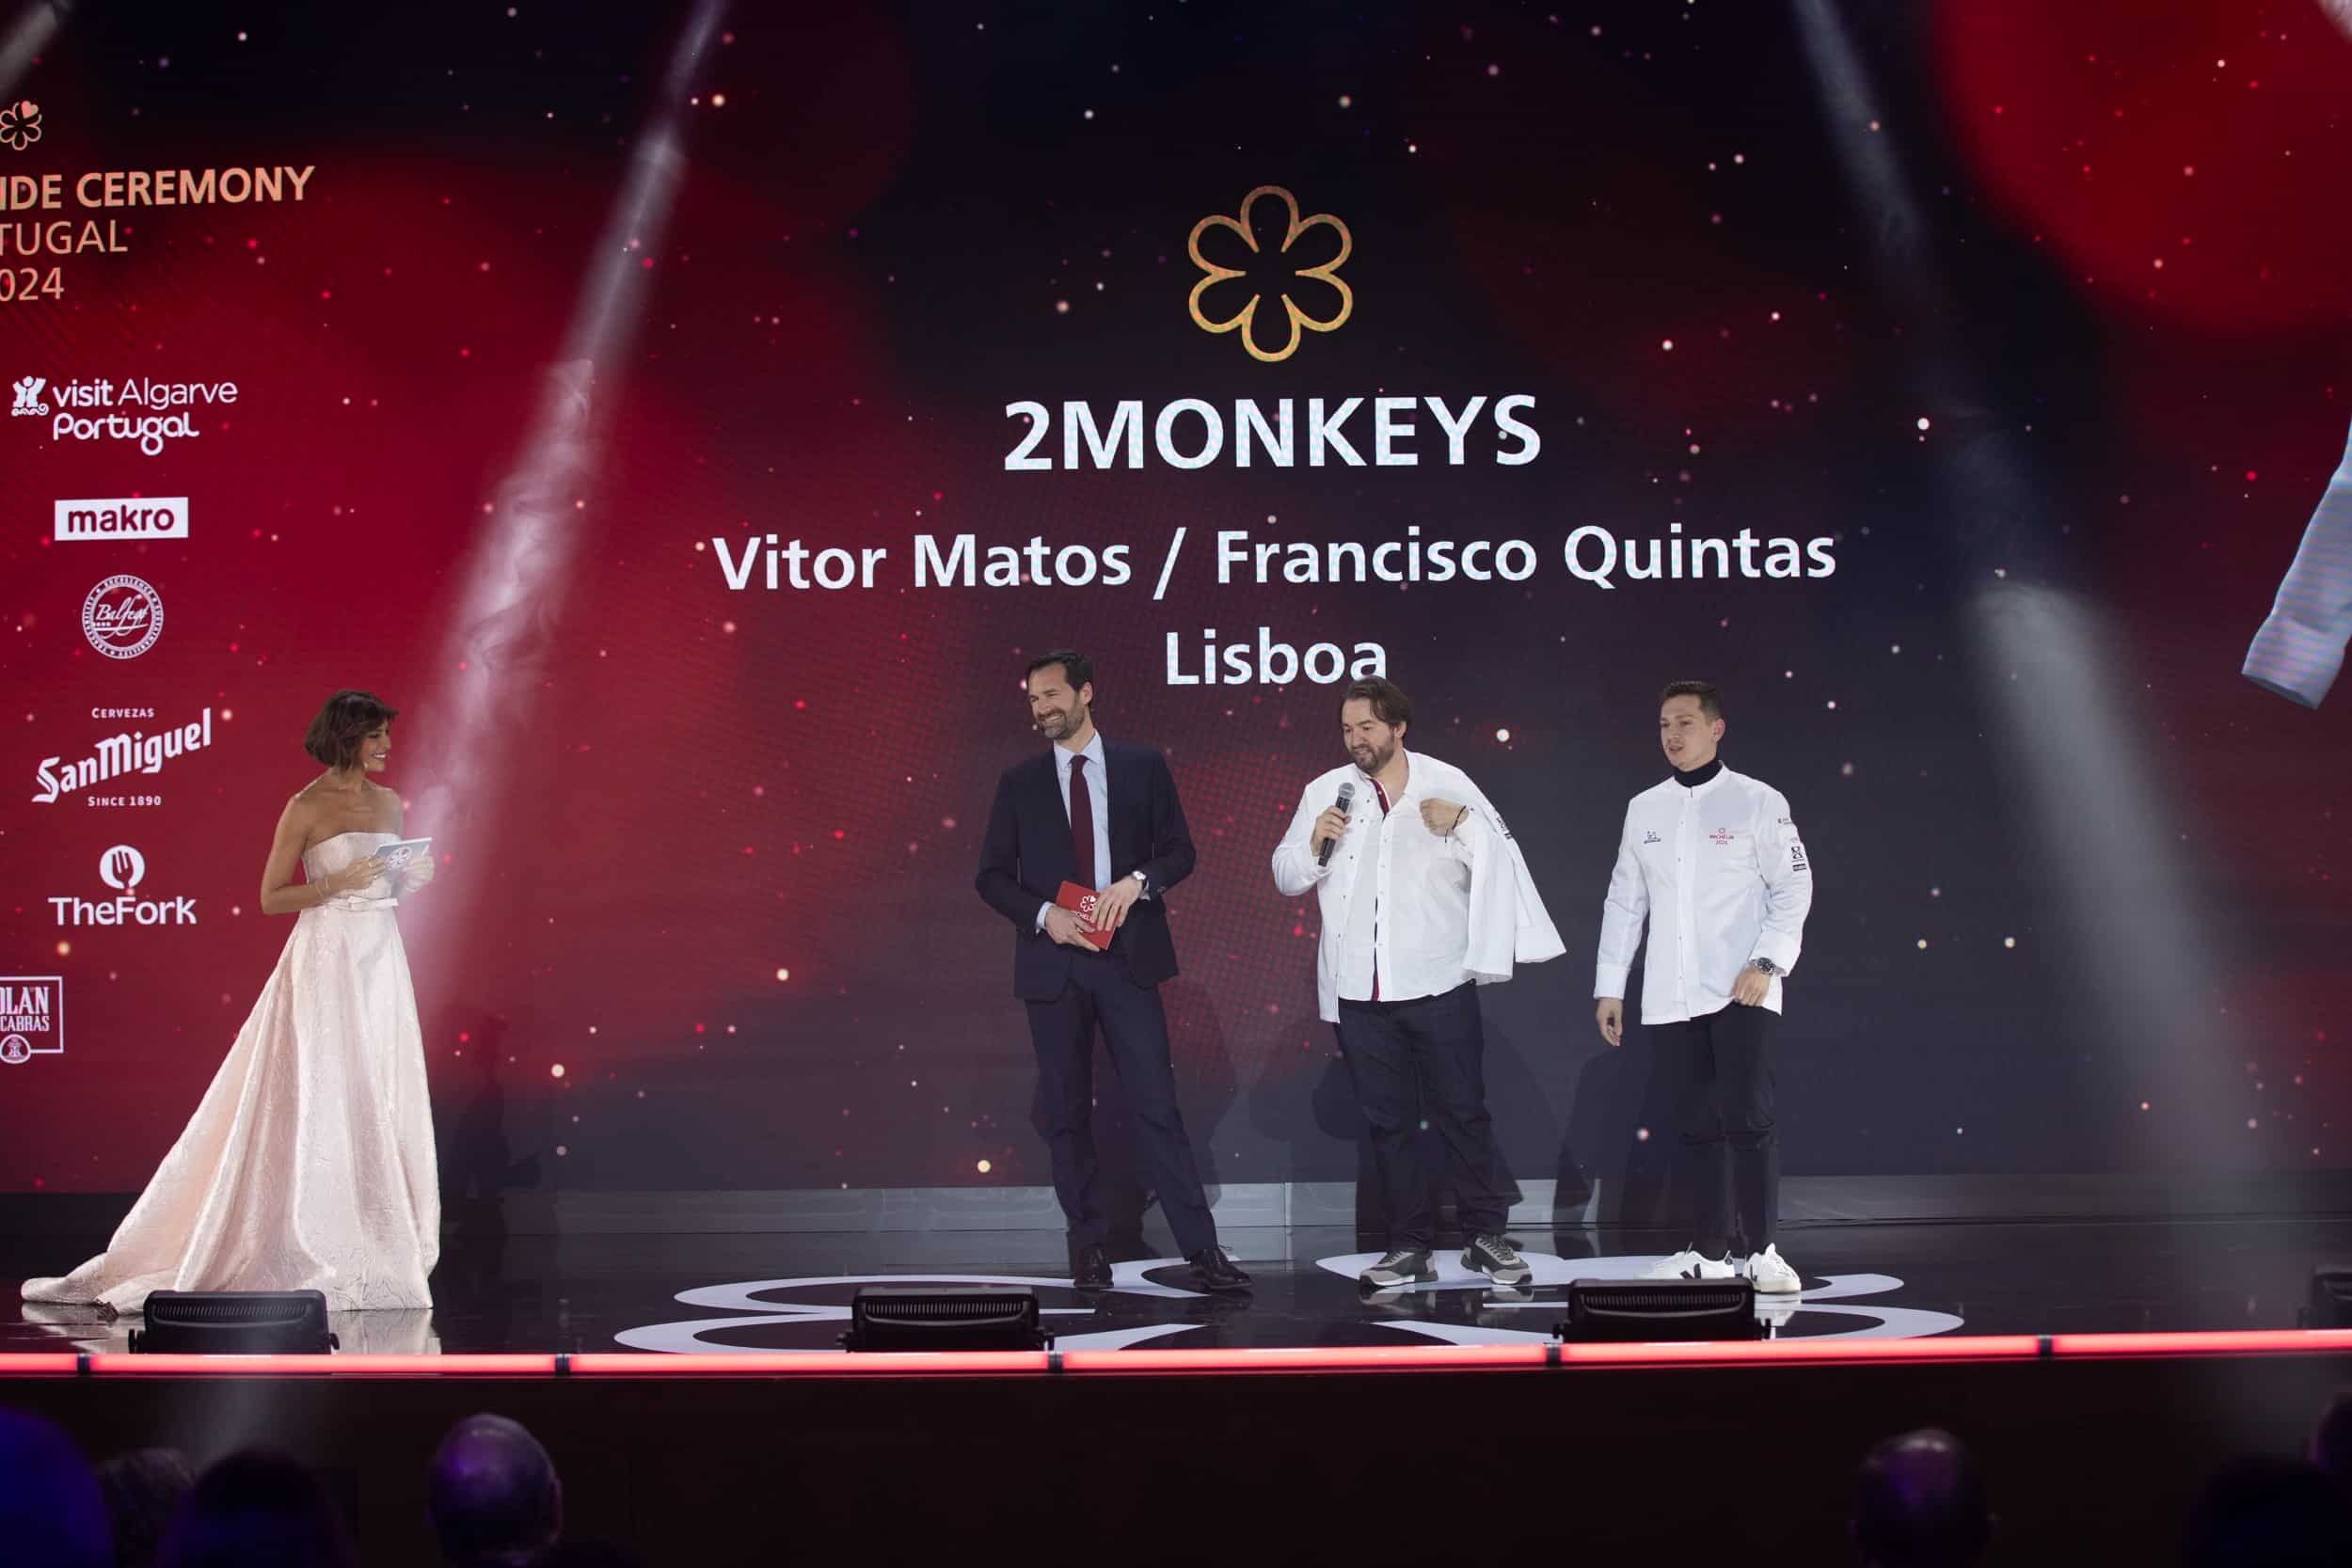 Les chefs Vítor Matos et Francisco Quintas reçoivent leur étoile Michelin pour 2Monkeys